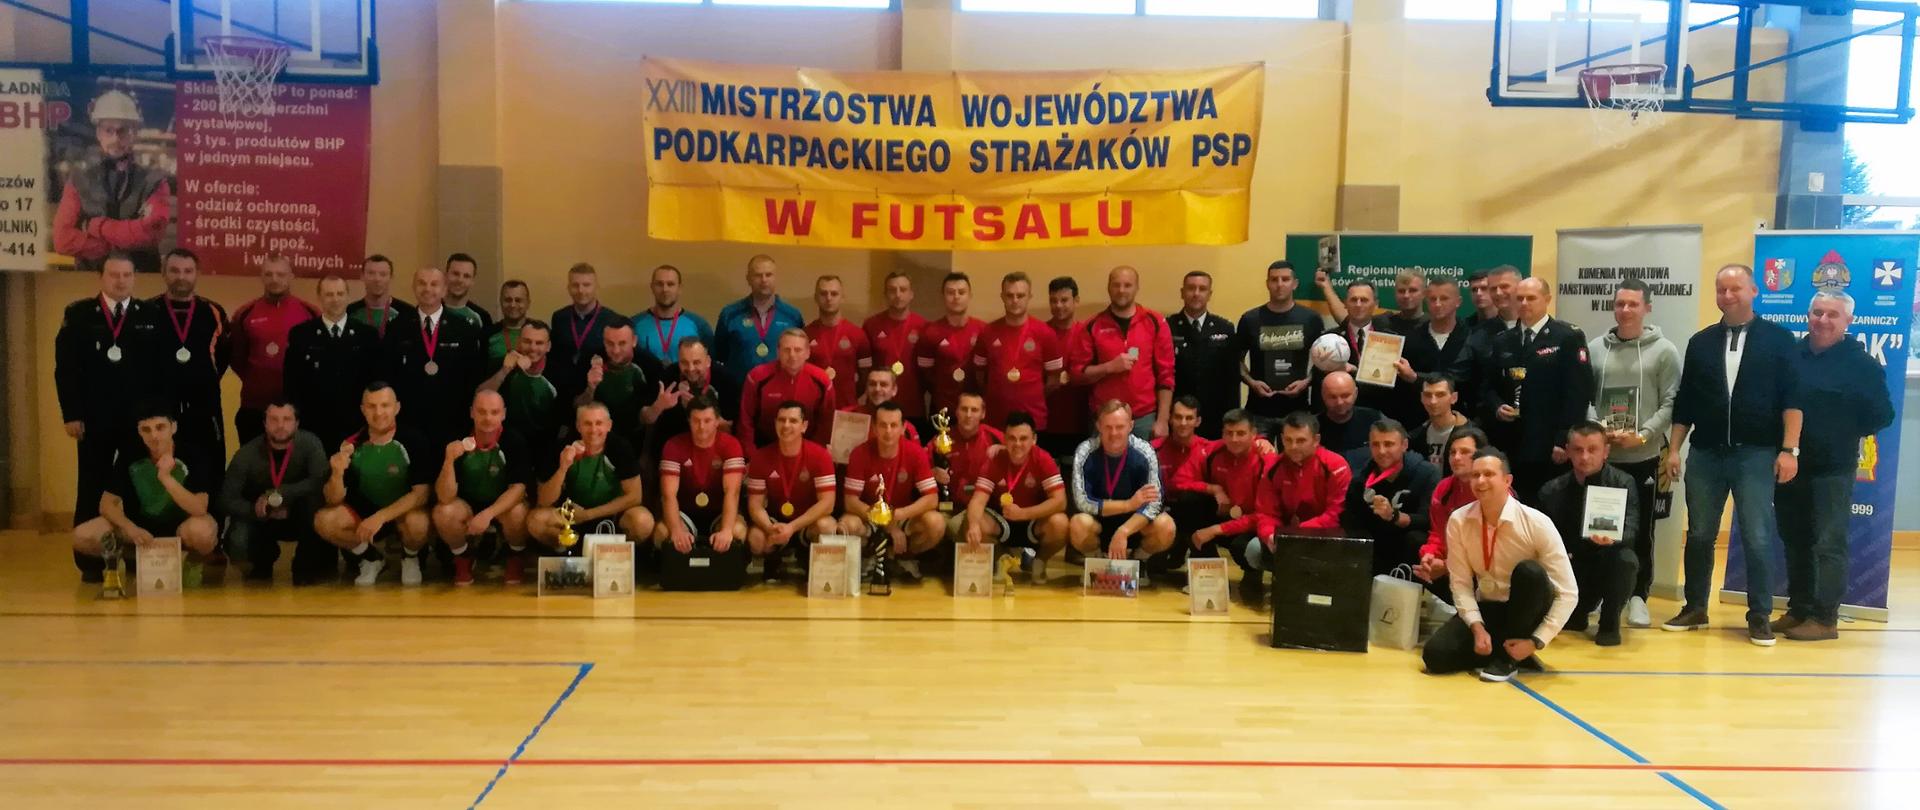 Zdjęcie przedstawia wszystkich uczestników oraz zaproszonych gości podczas XXIII Mistrzostwa Województwa Podkarpackiego Strażaków PSP w Futsalu